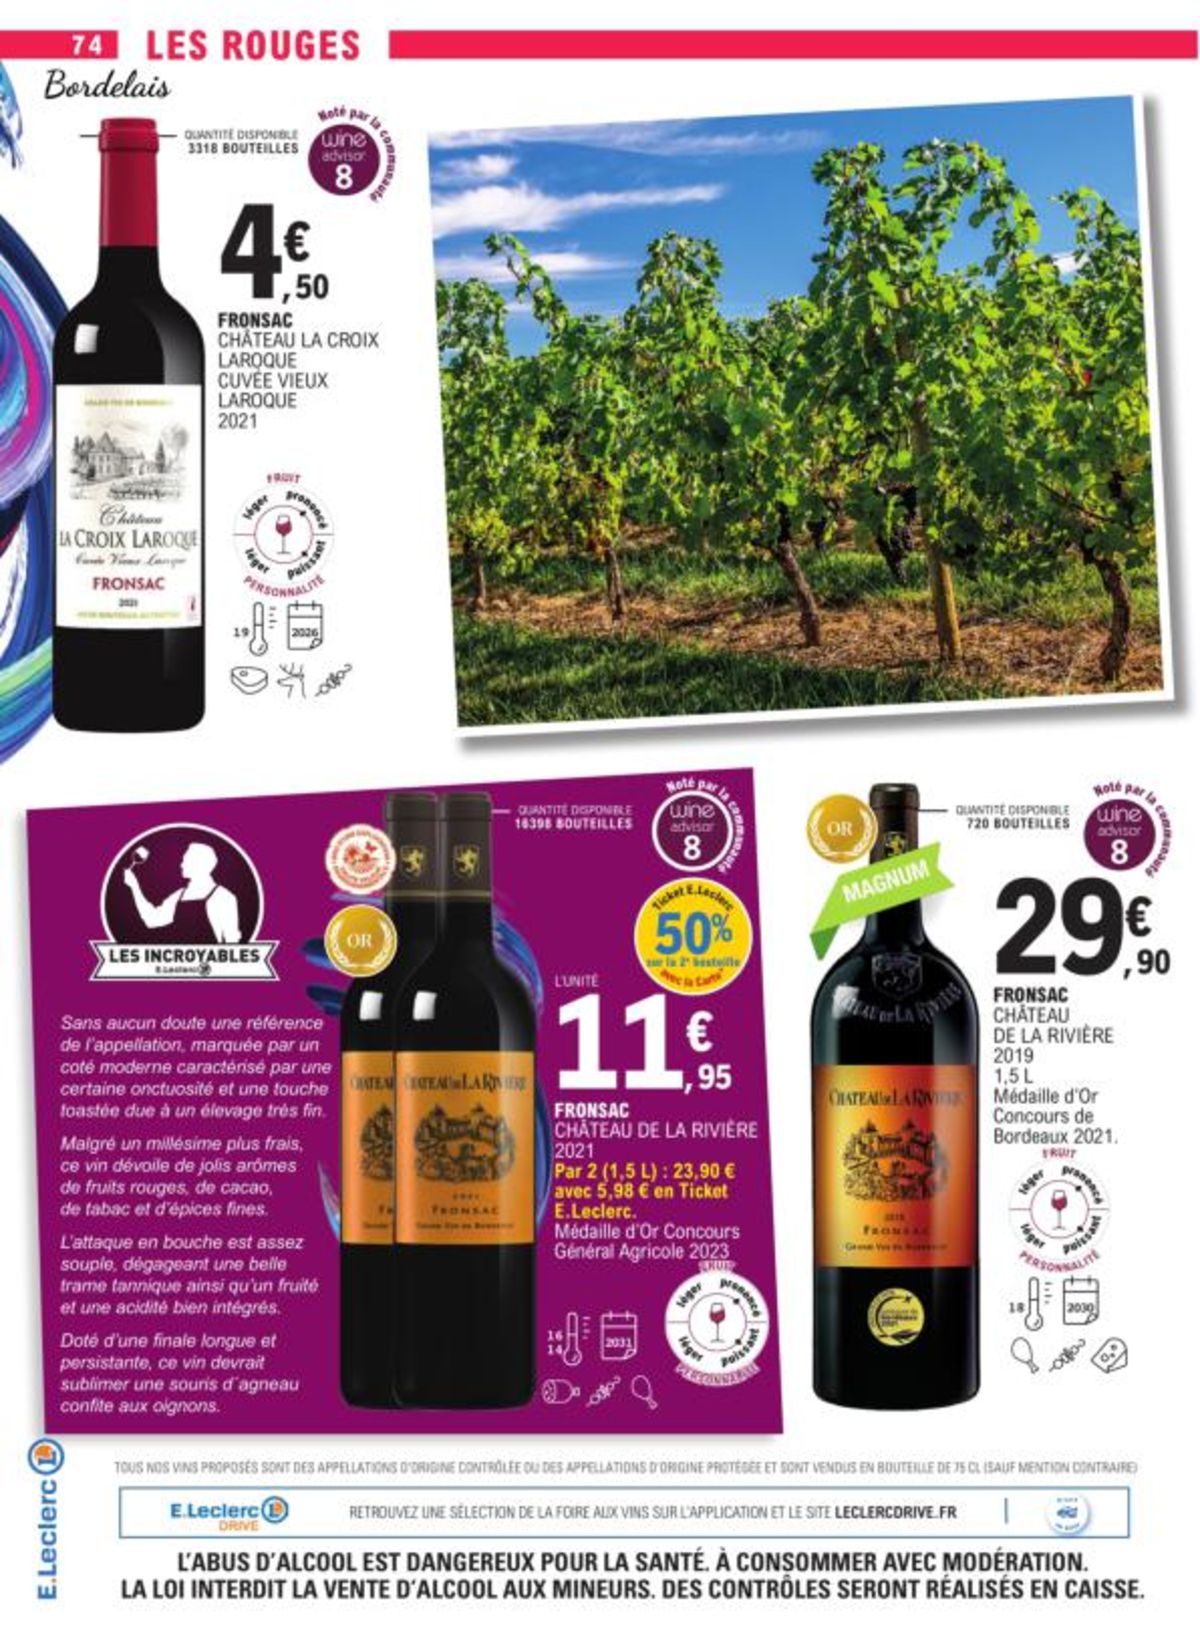 Catalogue Foire Aux Vins - Mixte, page 02960